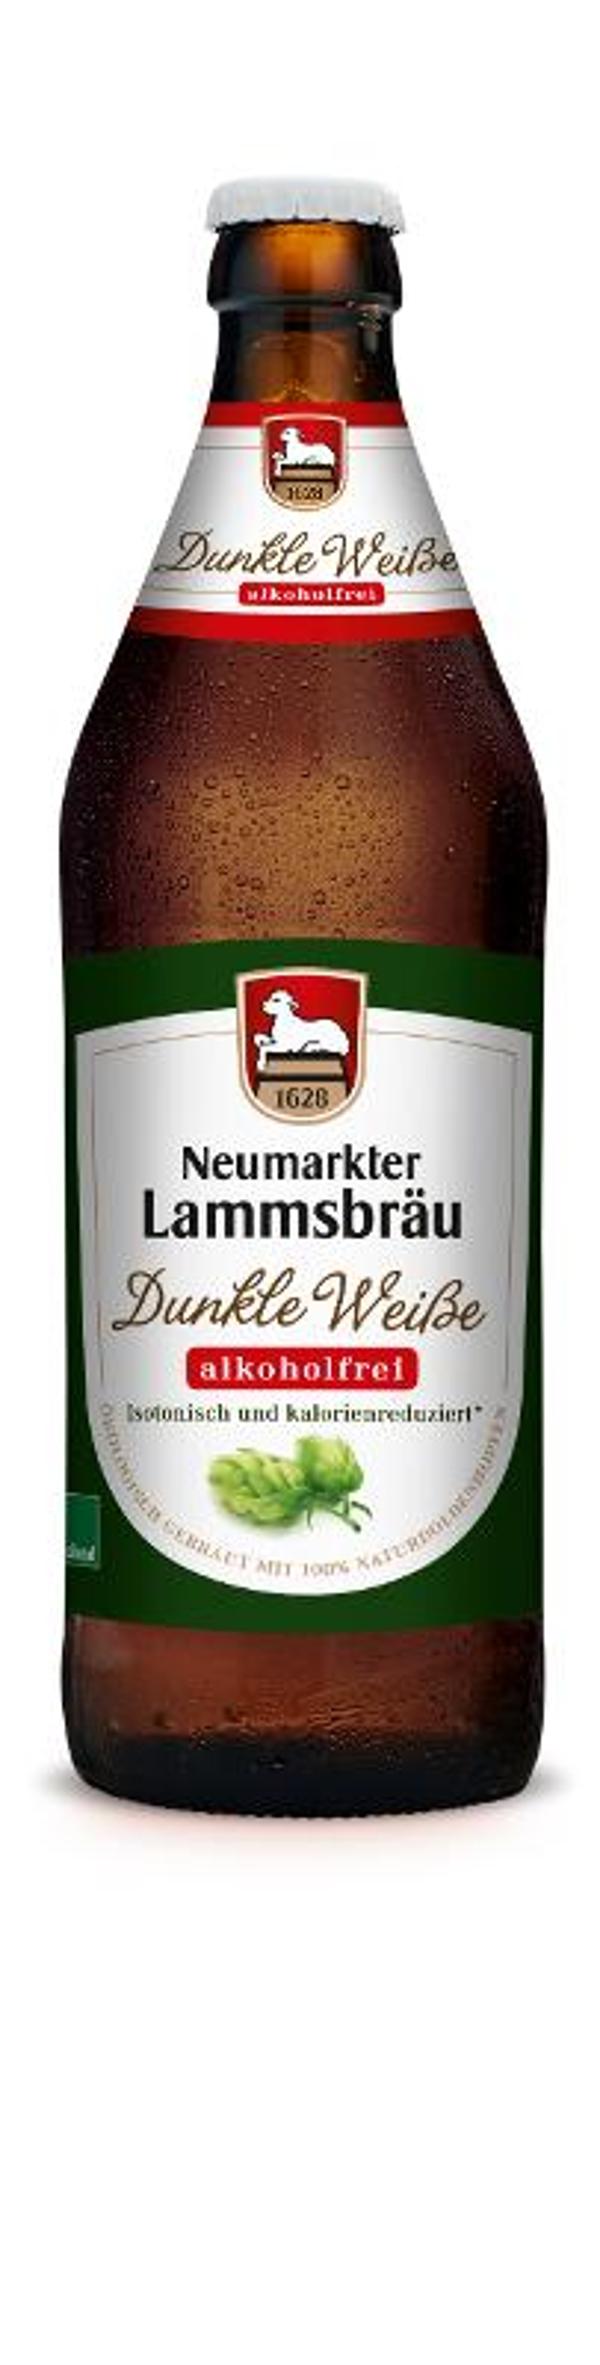 Produktfoto zu VPE Bier Lammsbräu Dunkle Weiße alkoholfrei 10x0,5 l Neumarkter Lammsbräu